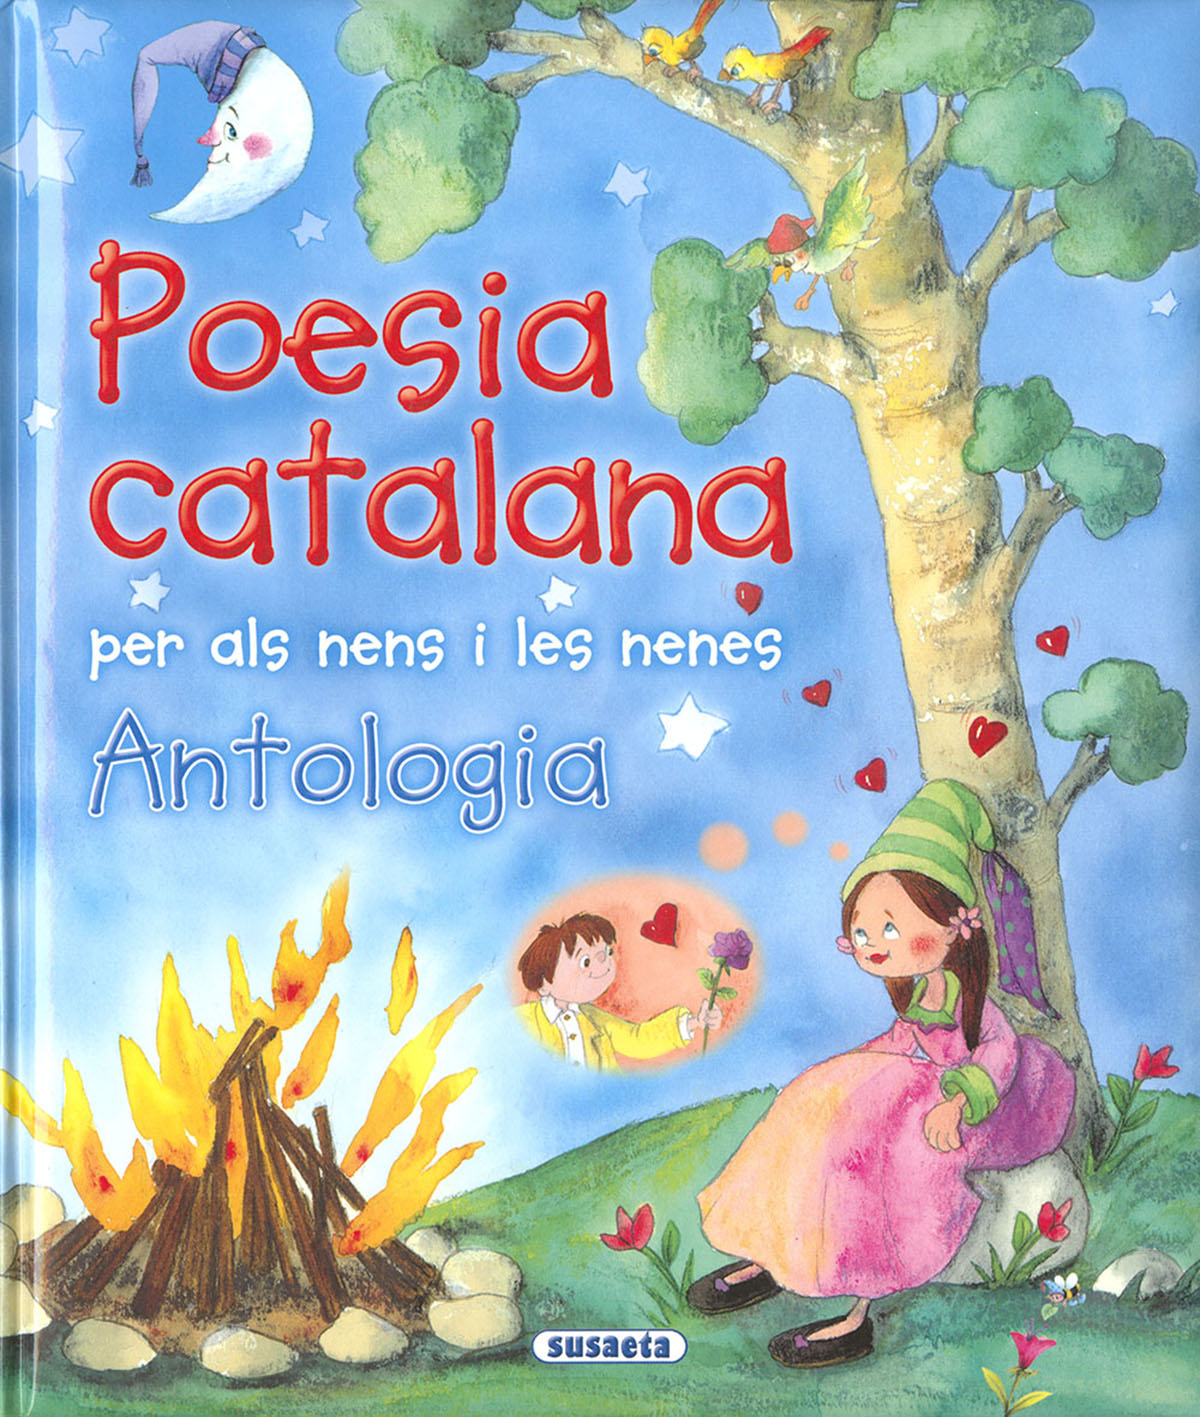 Poesia catalana per als nens i les nenes, antologia